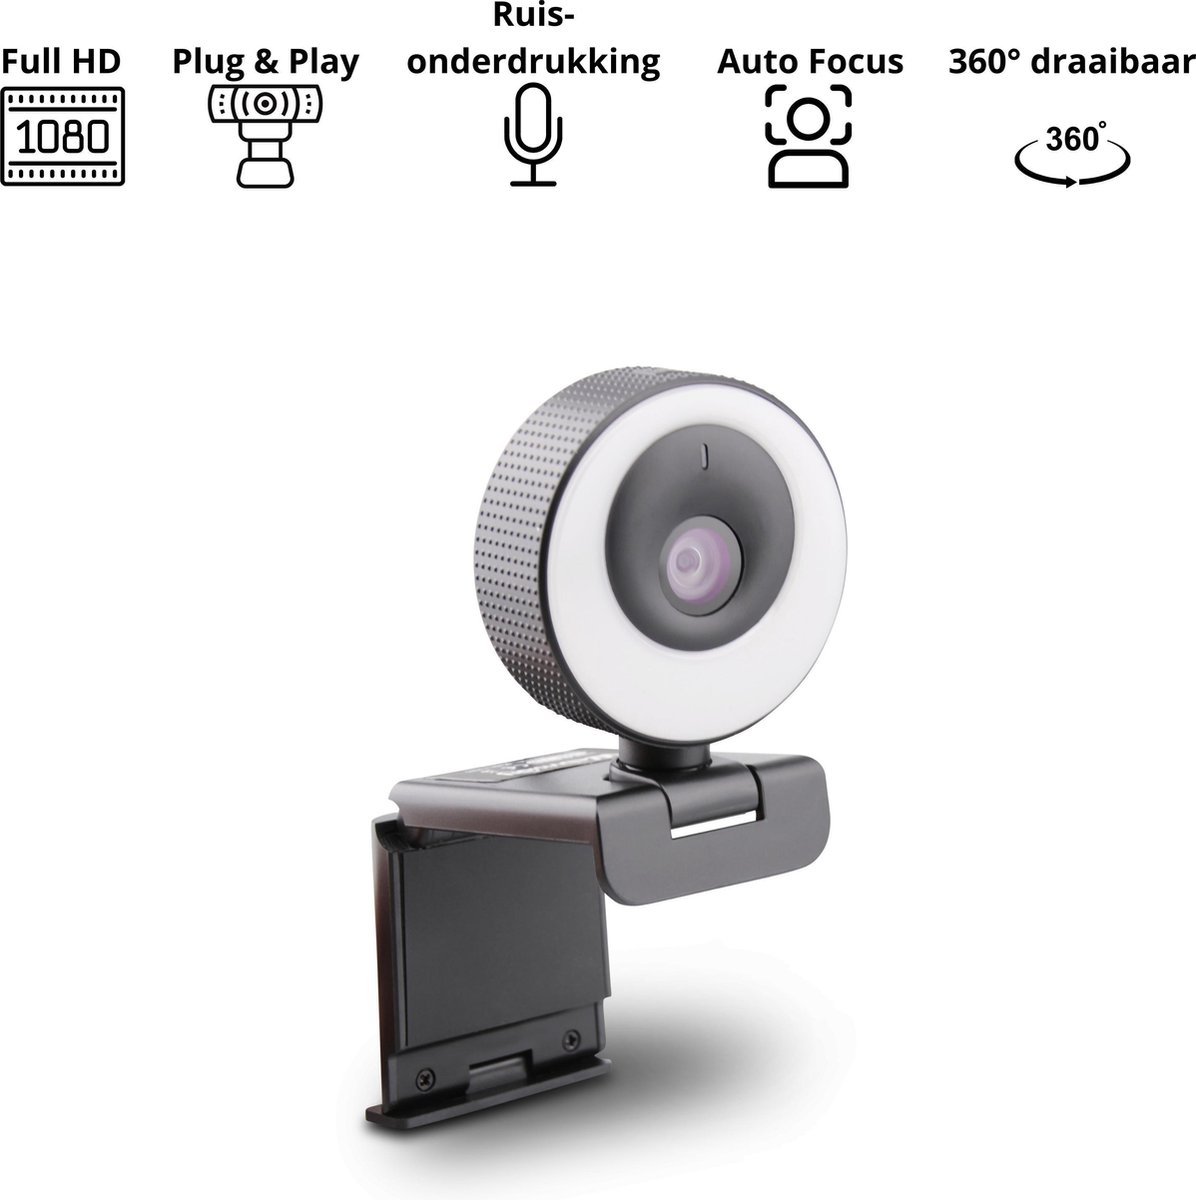 Webcam met ringlamp - ring light - ringlicht - Full HD - 1080p - 60 FPS - Webcam voor pc - Inclusief statief en webcam cover